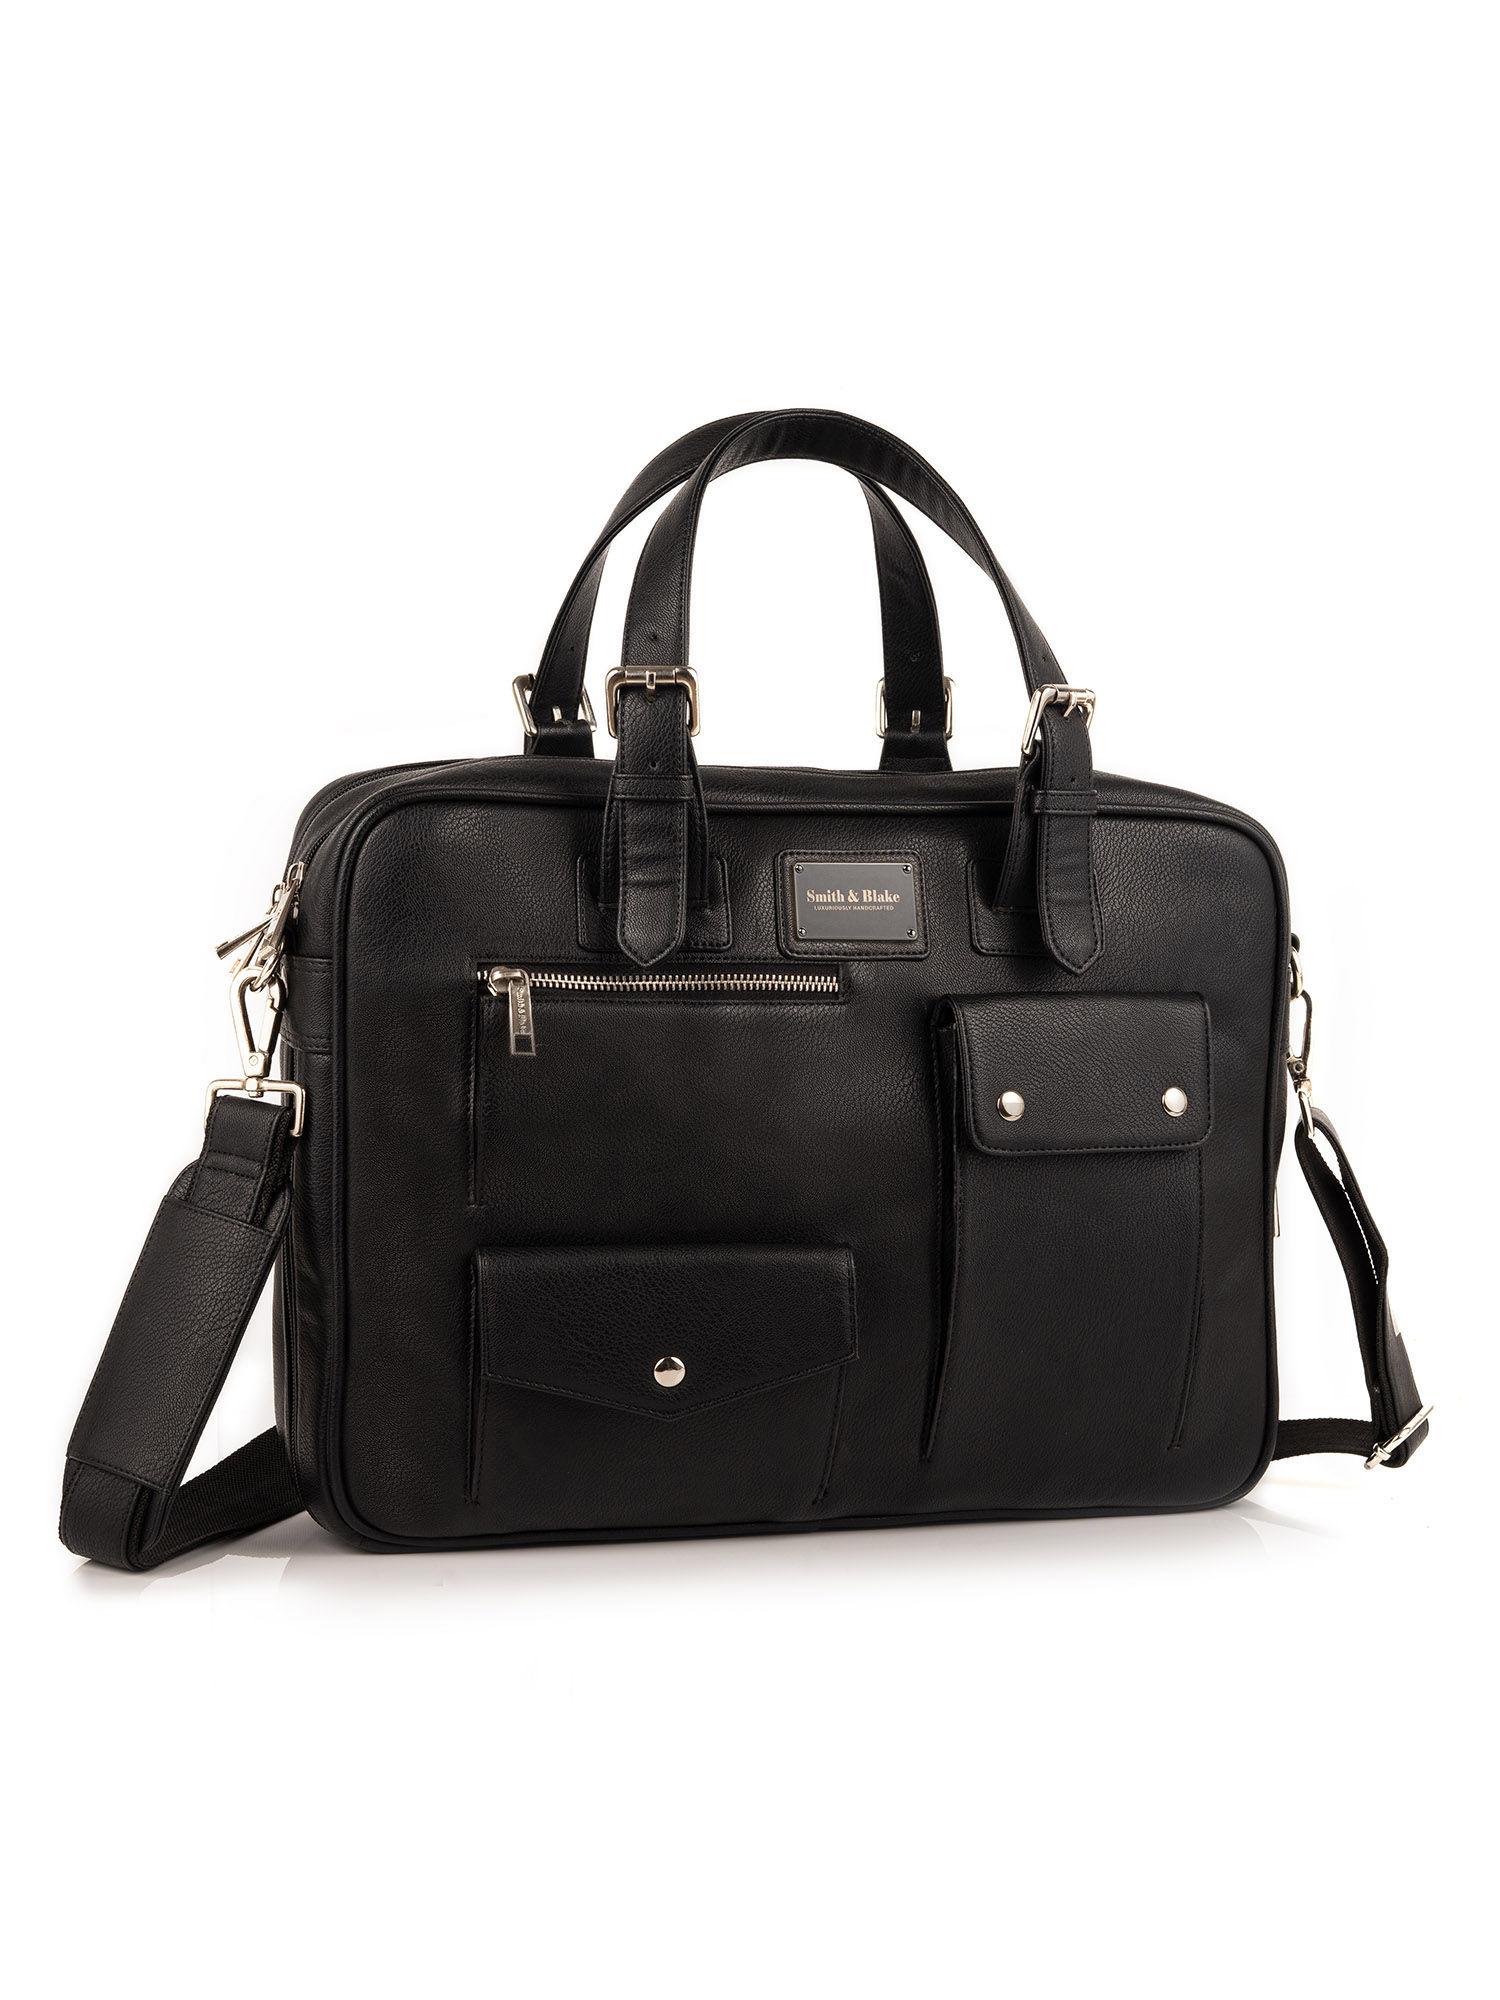 messenger bag double compartment black leatherette manhattan